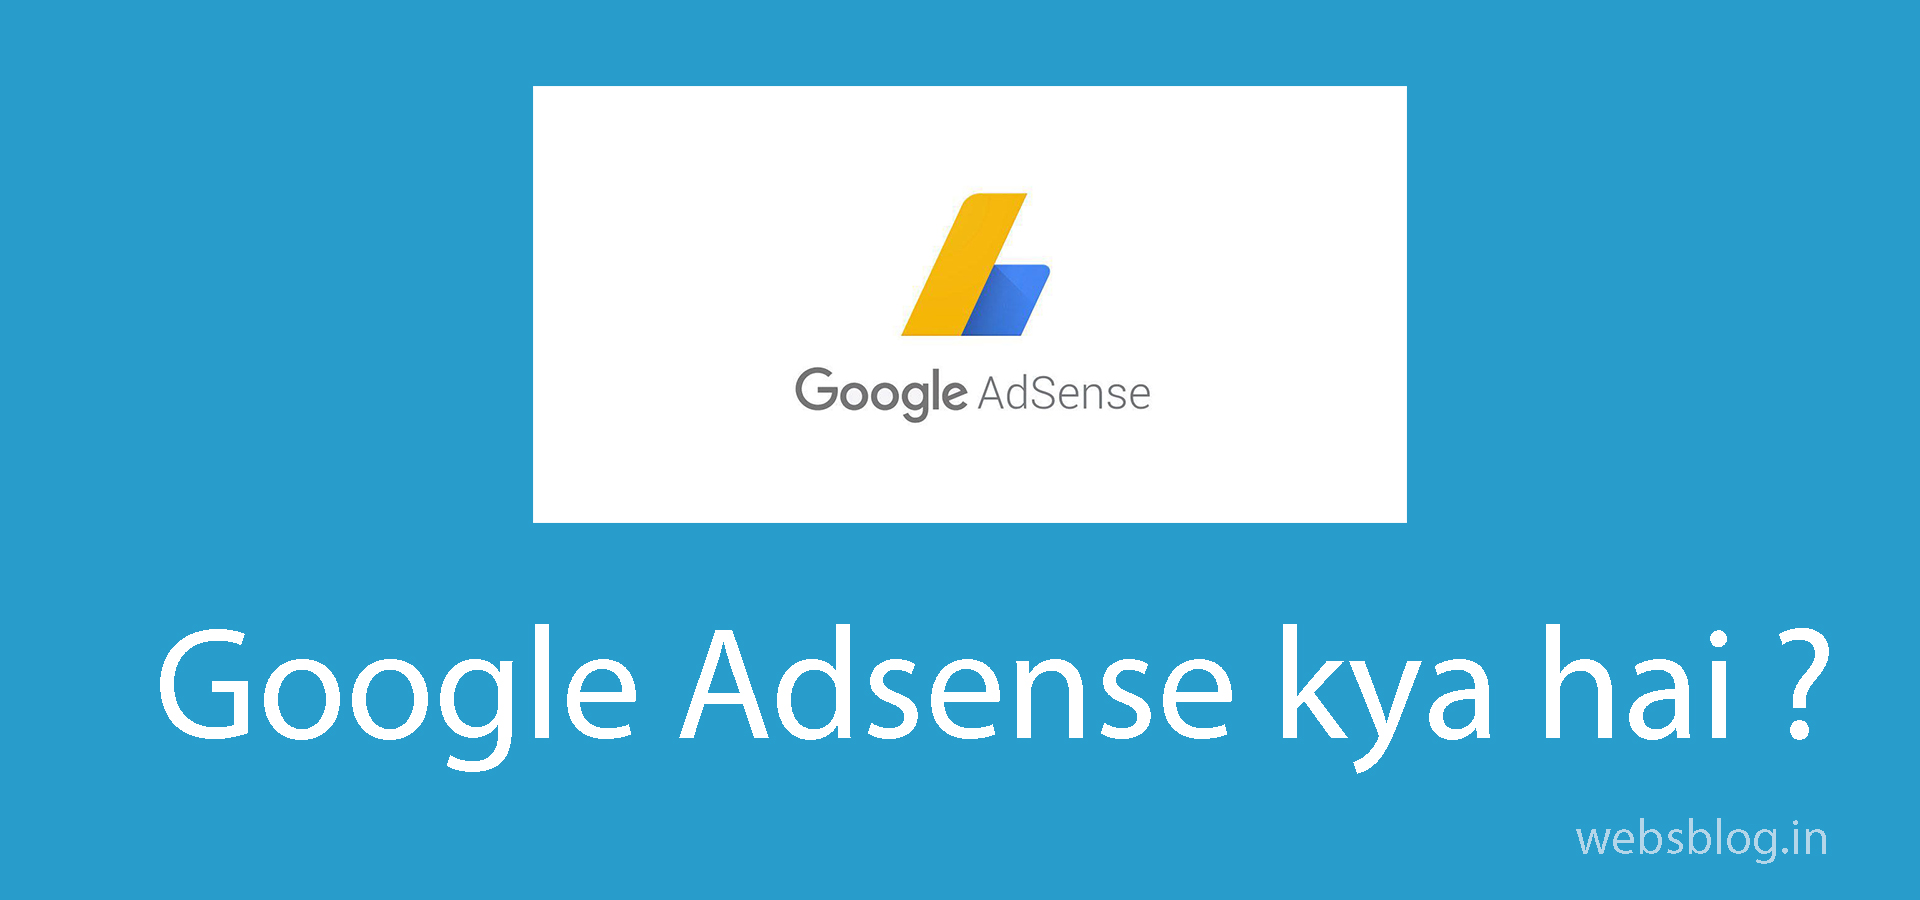 Google Adsence Kya Hai?